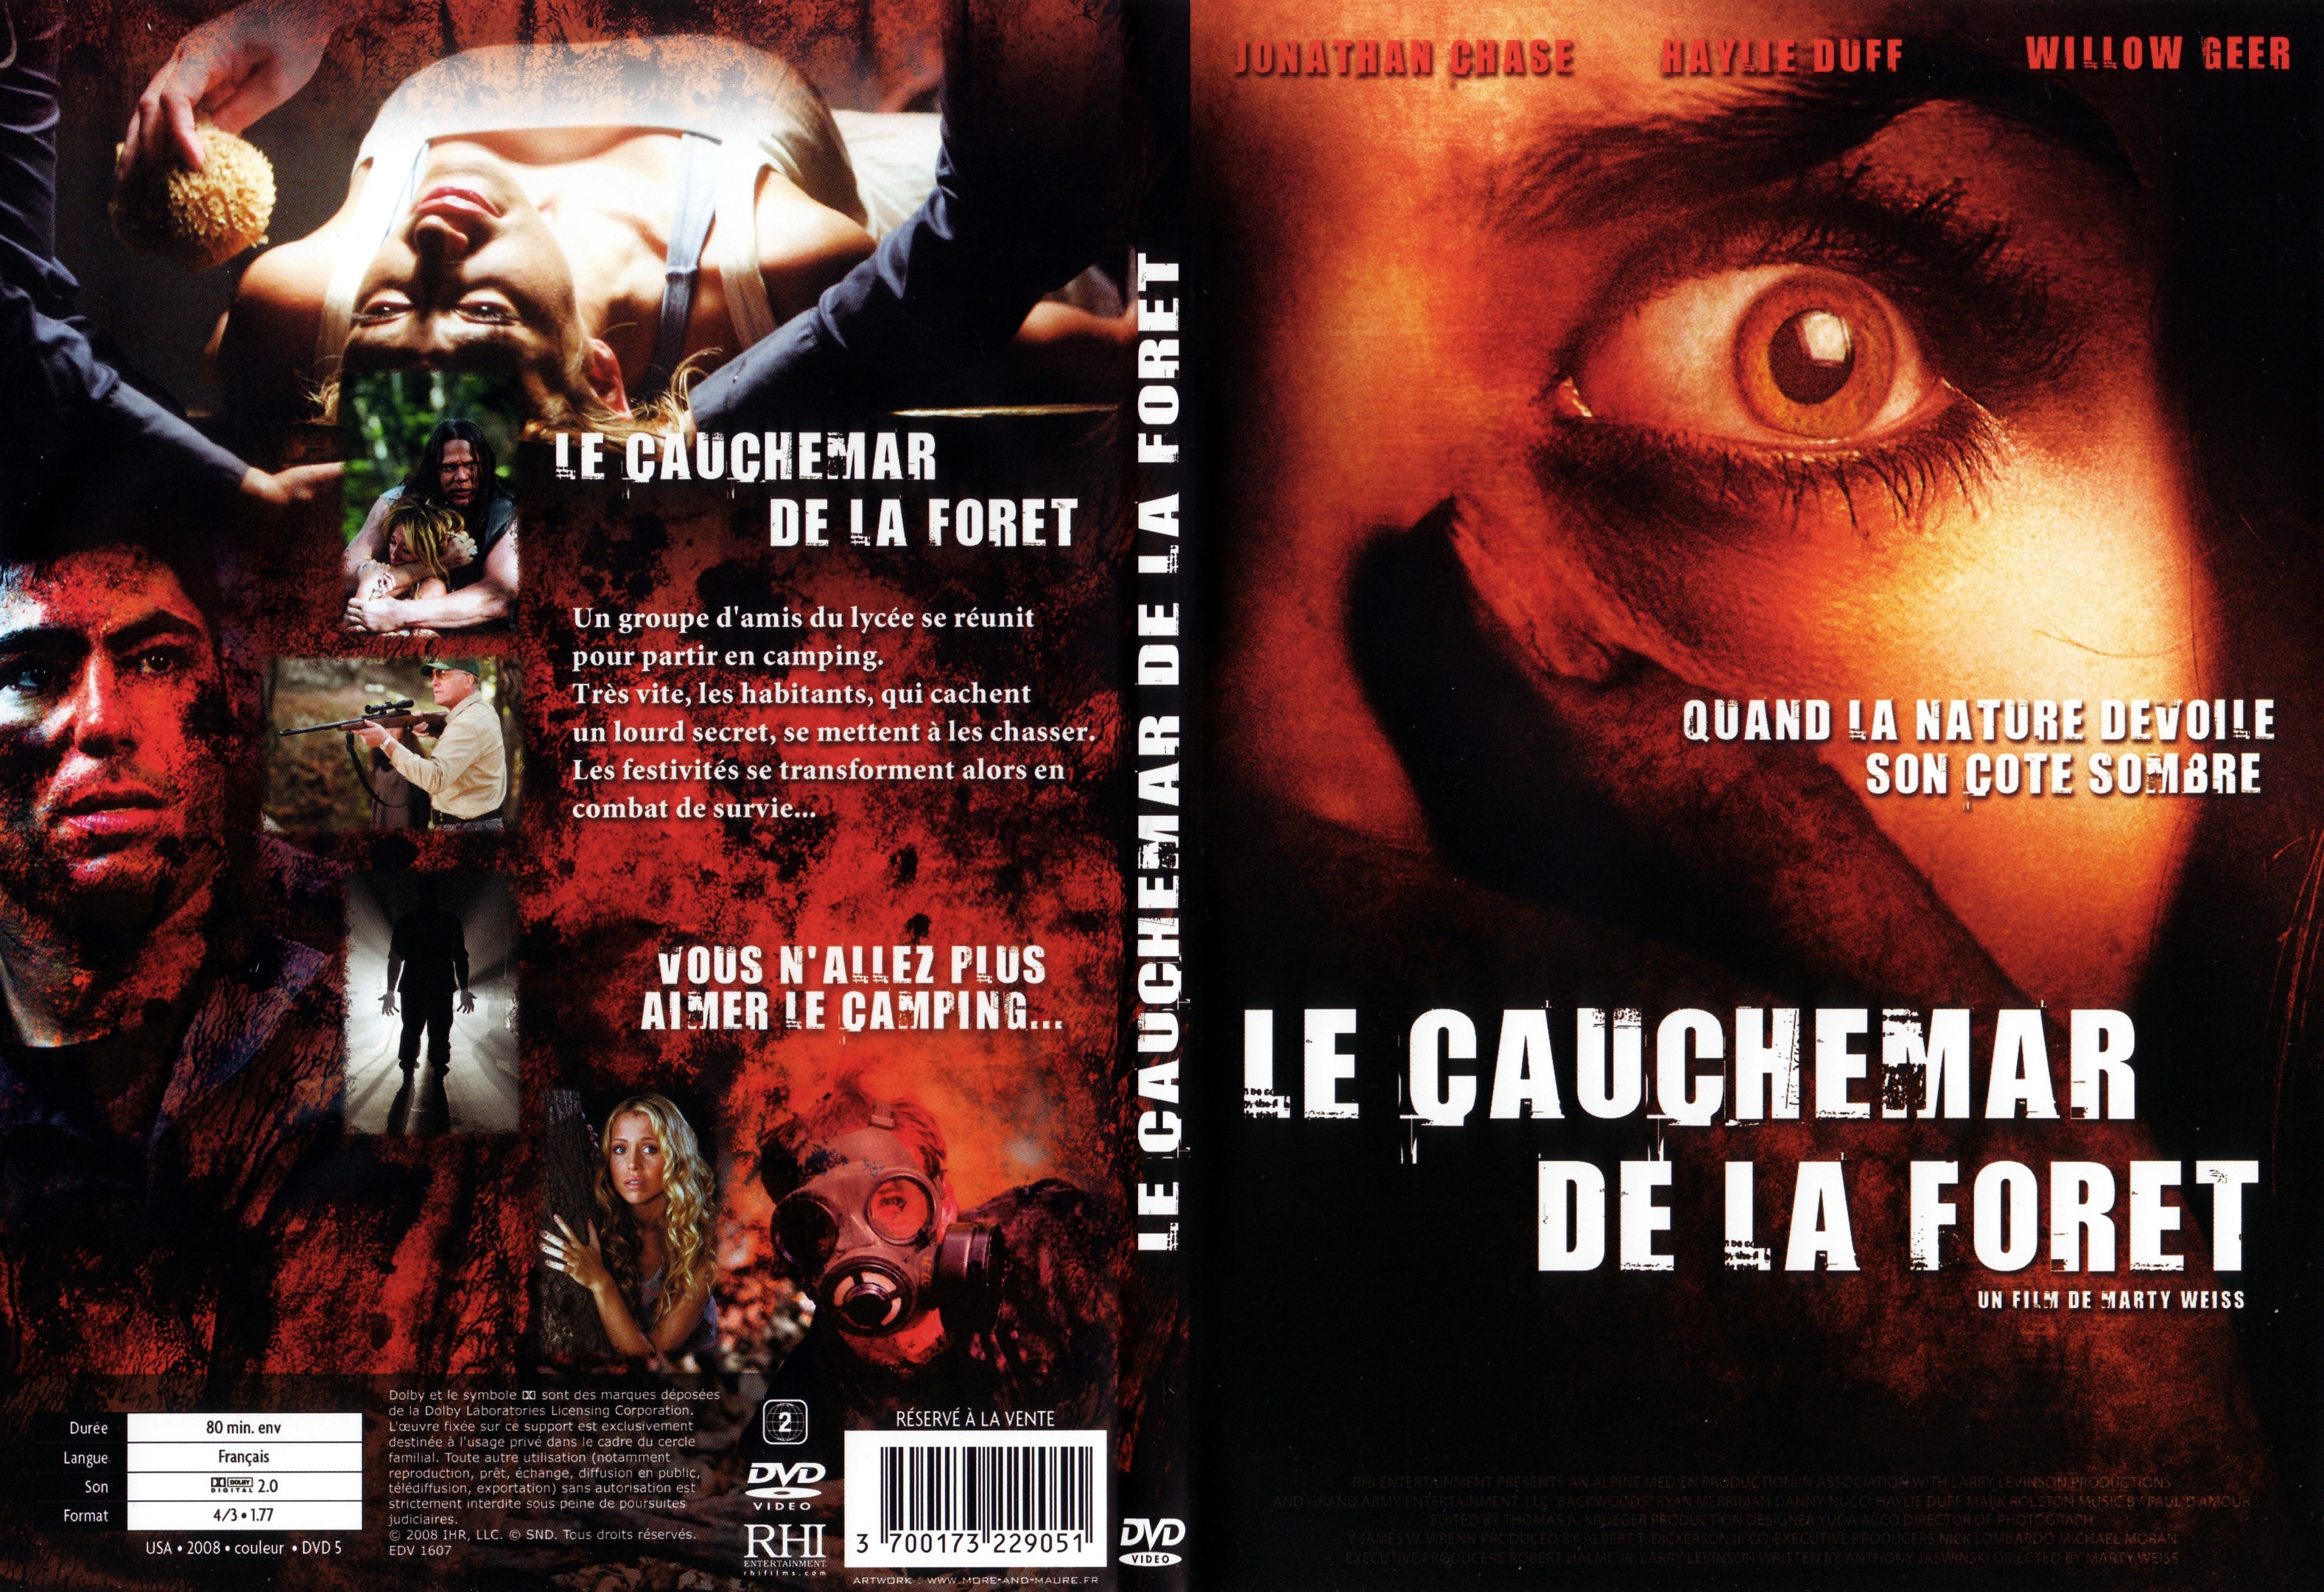 Jaquette DVD Le cauchemar de la foret - SLIM